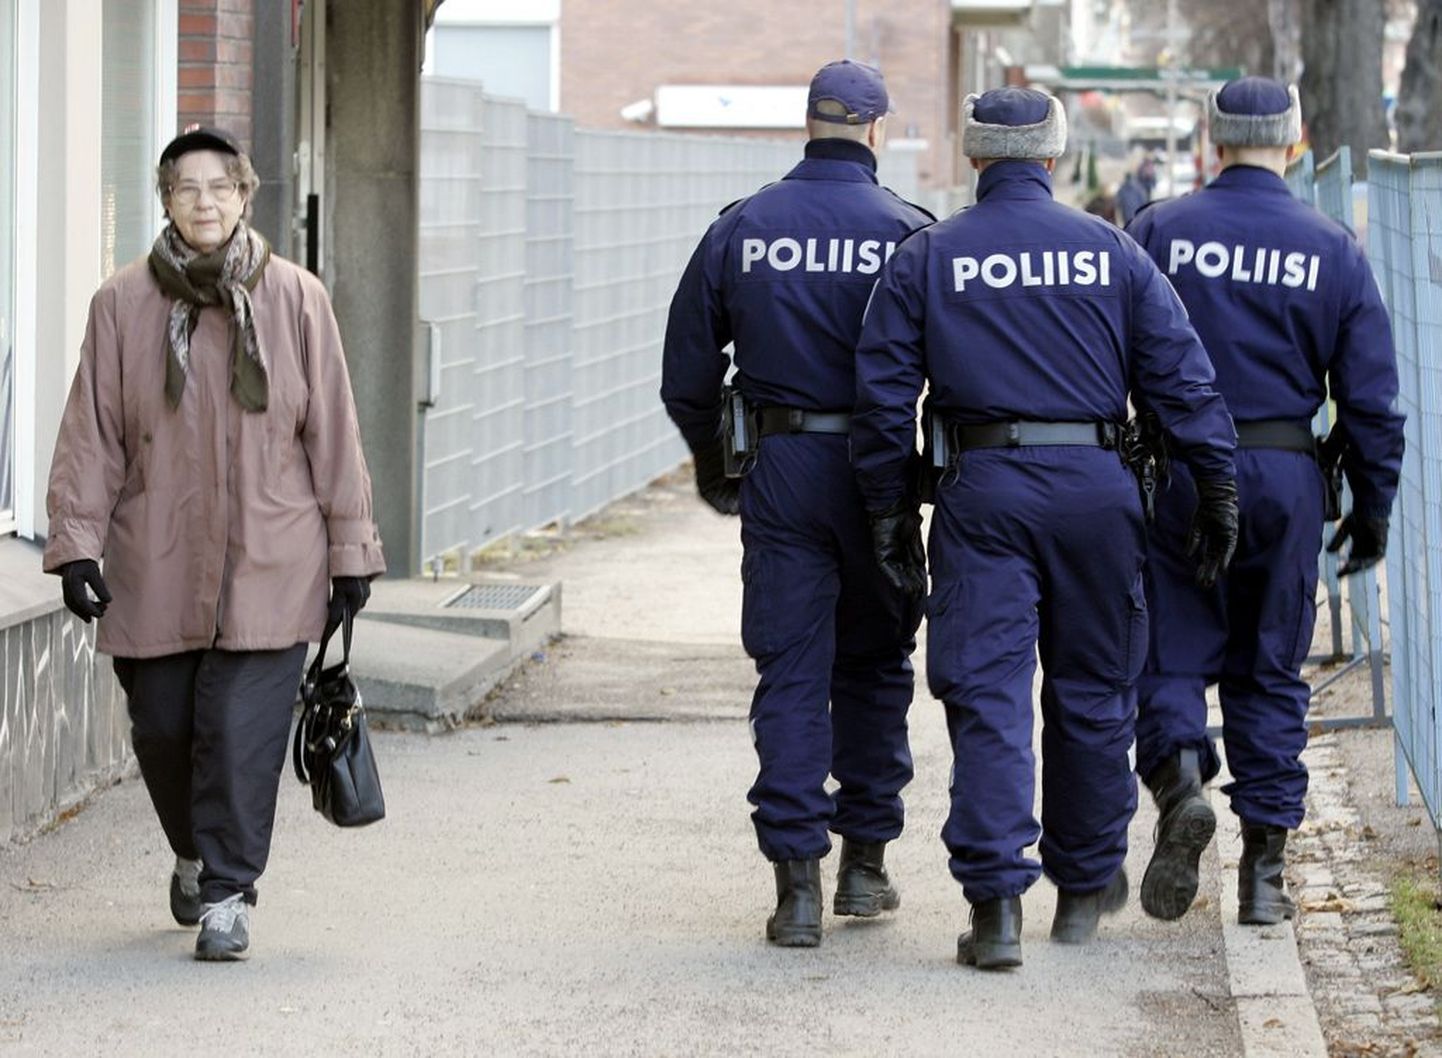 Soome politseinikud (pilt on illustreeriv).